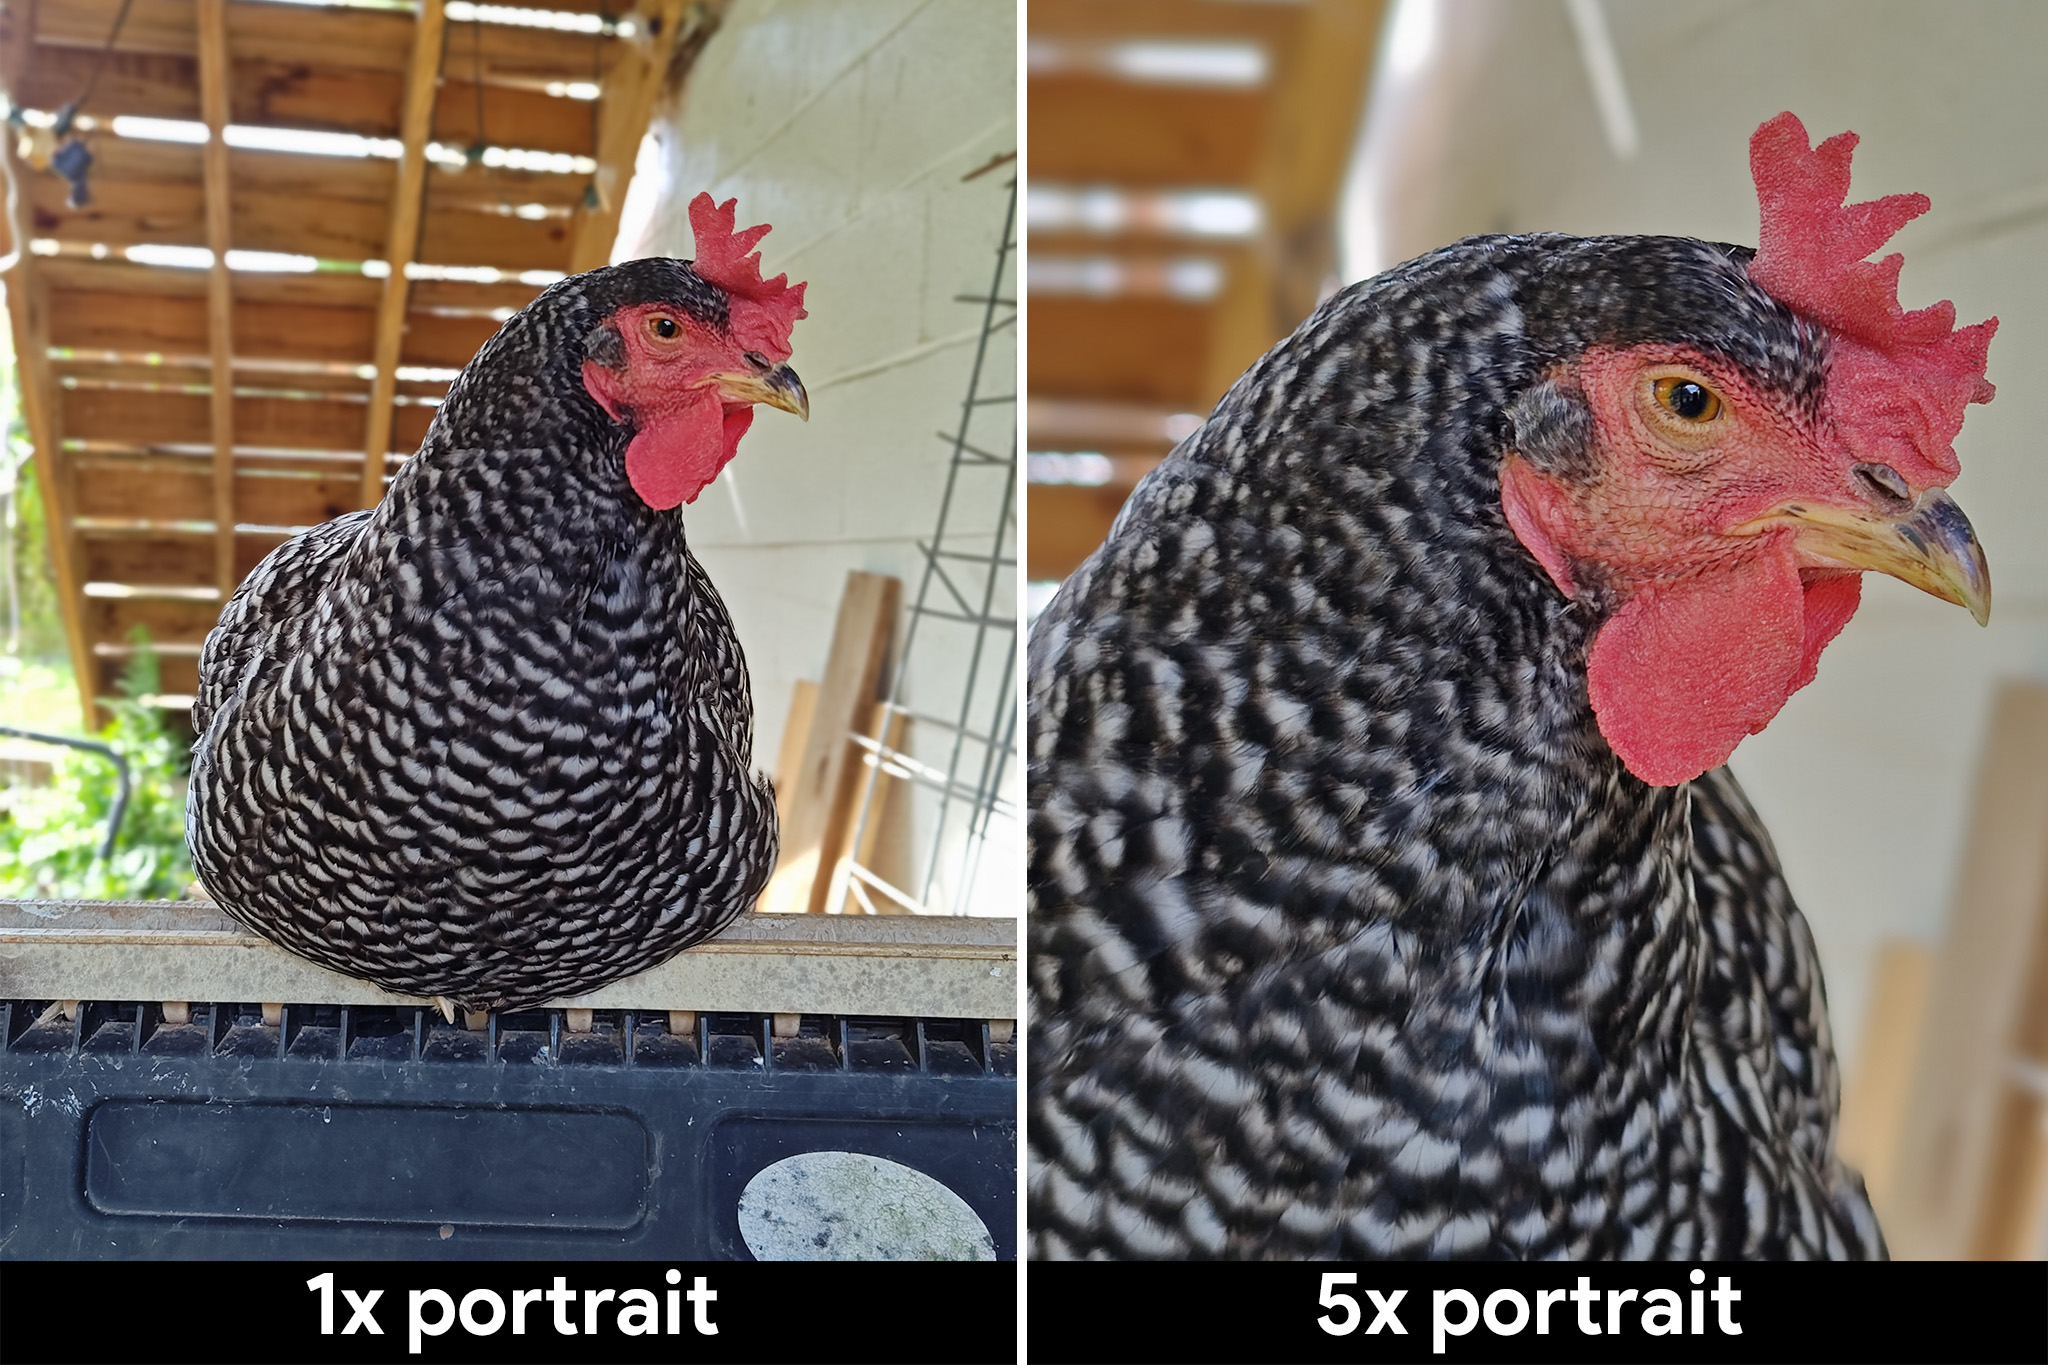 Porównanie zdjęć portretowych z obiektywu 1x i obiektywu 5x